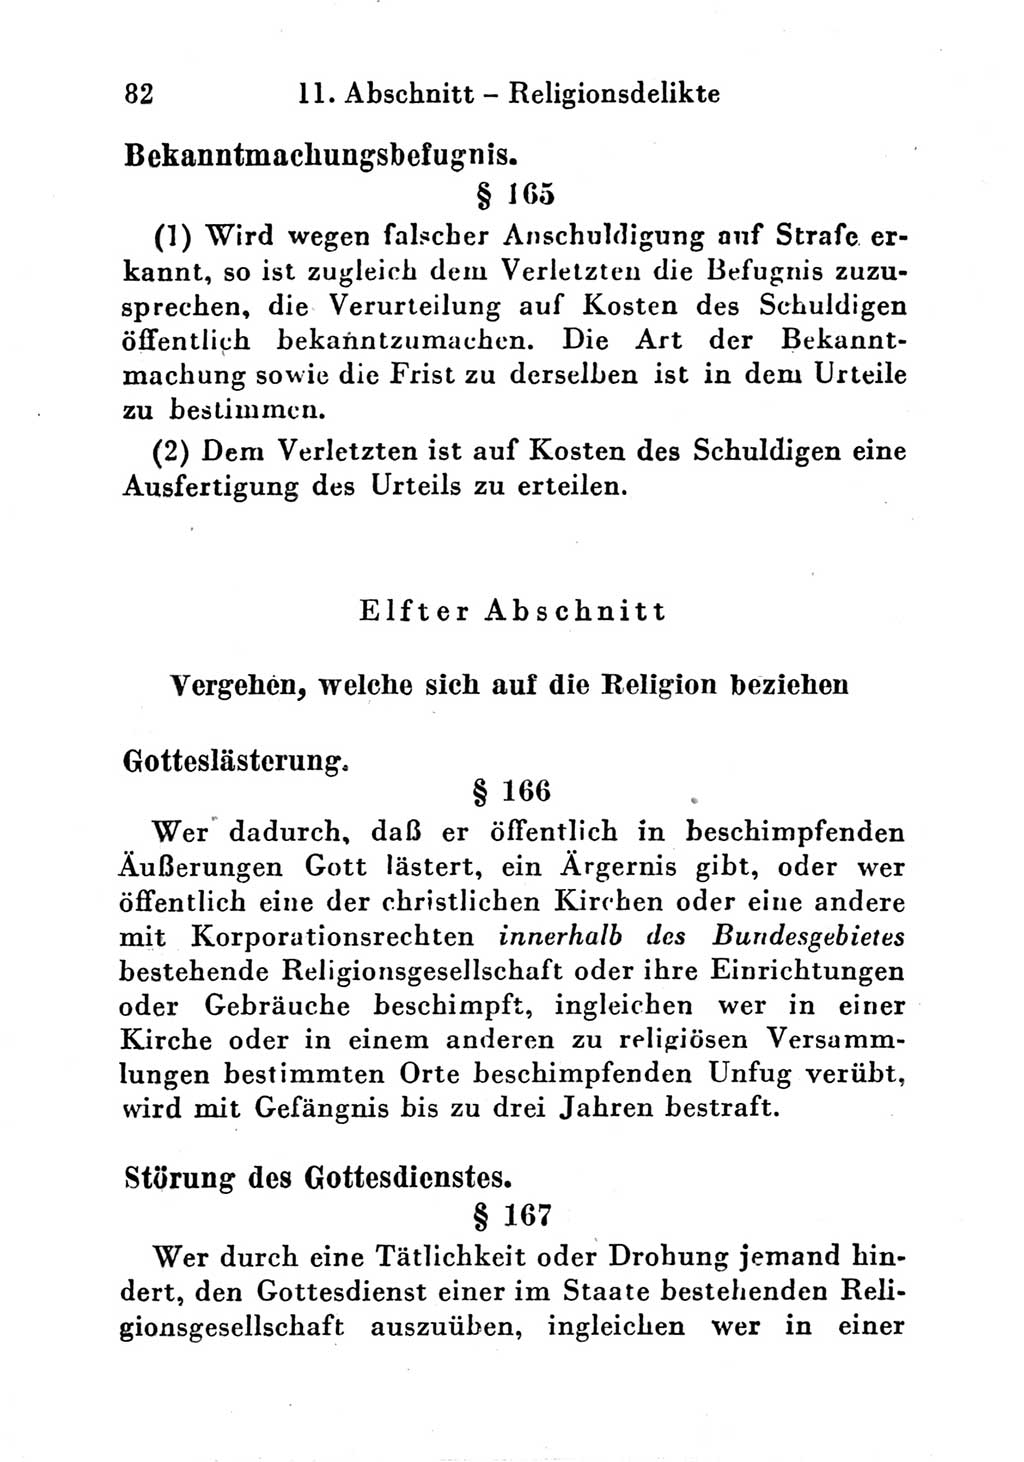 Strafgesetzbuch (StGB) und andere Strafgesetze [Deutsche Demokratische Republik (DDR)] 1951, Seite 82 (StGB Strafges. DDR 1951, S. 82)